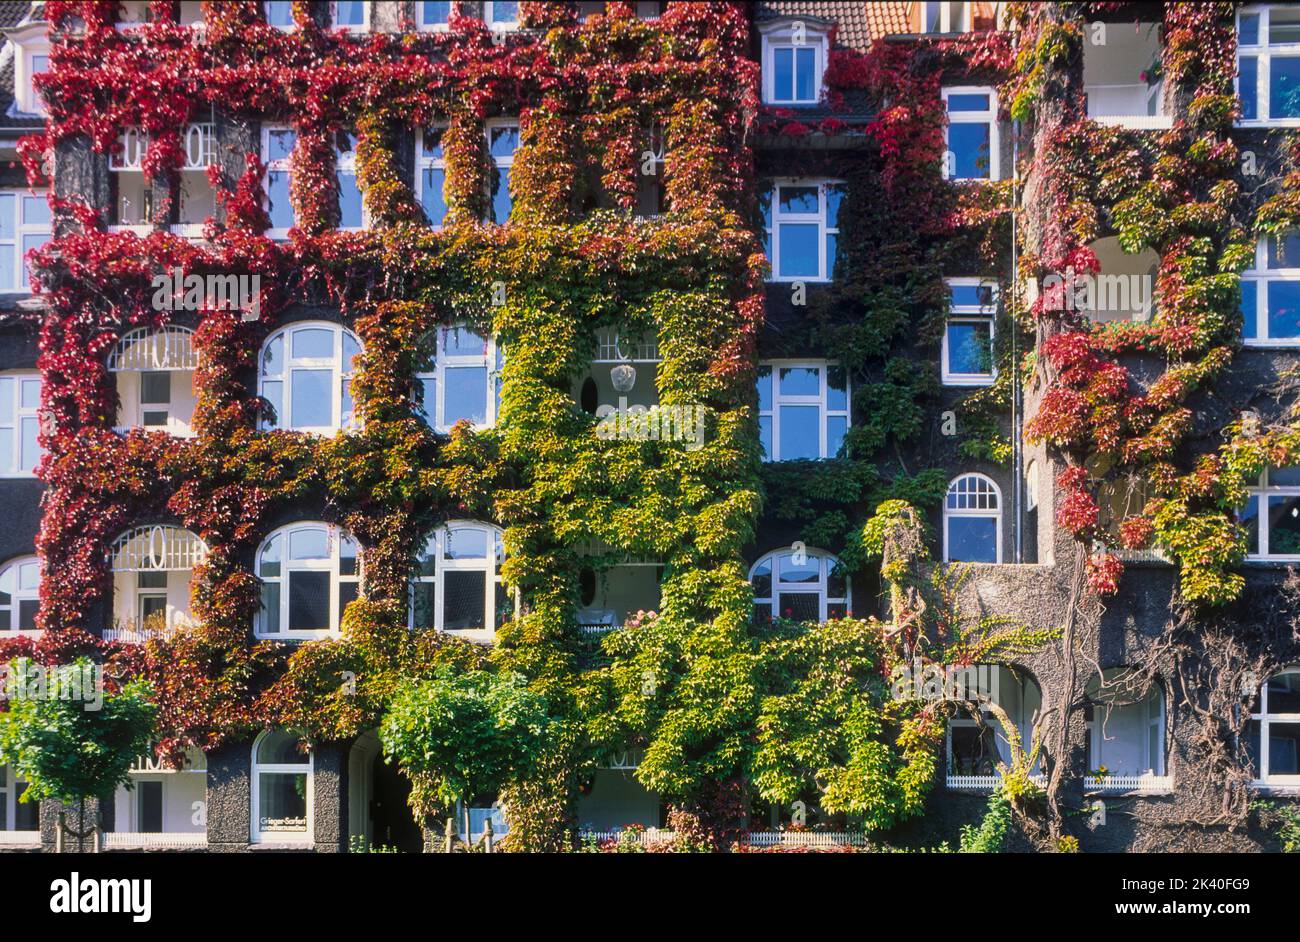 Hiedra de Boston, enredadera japonesa (Parthenocissus tricuspidata), escalada en una fachada, Alemania Foto de stock